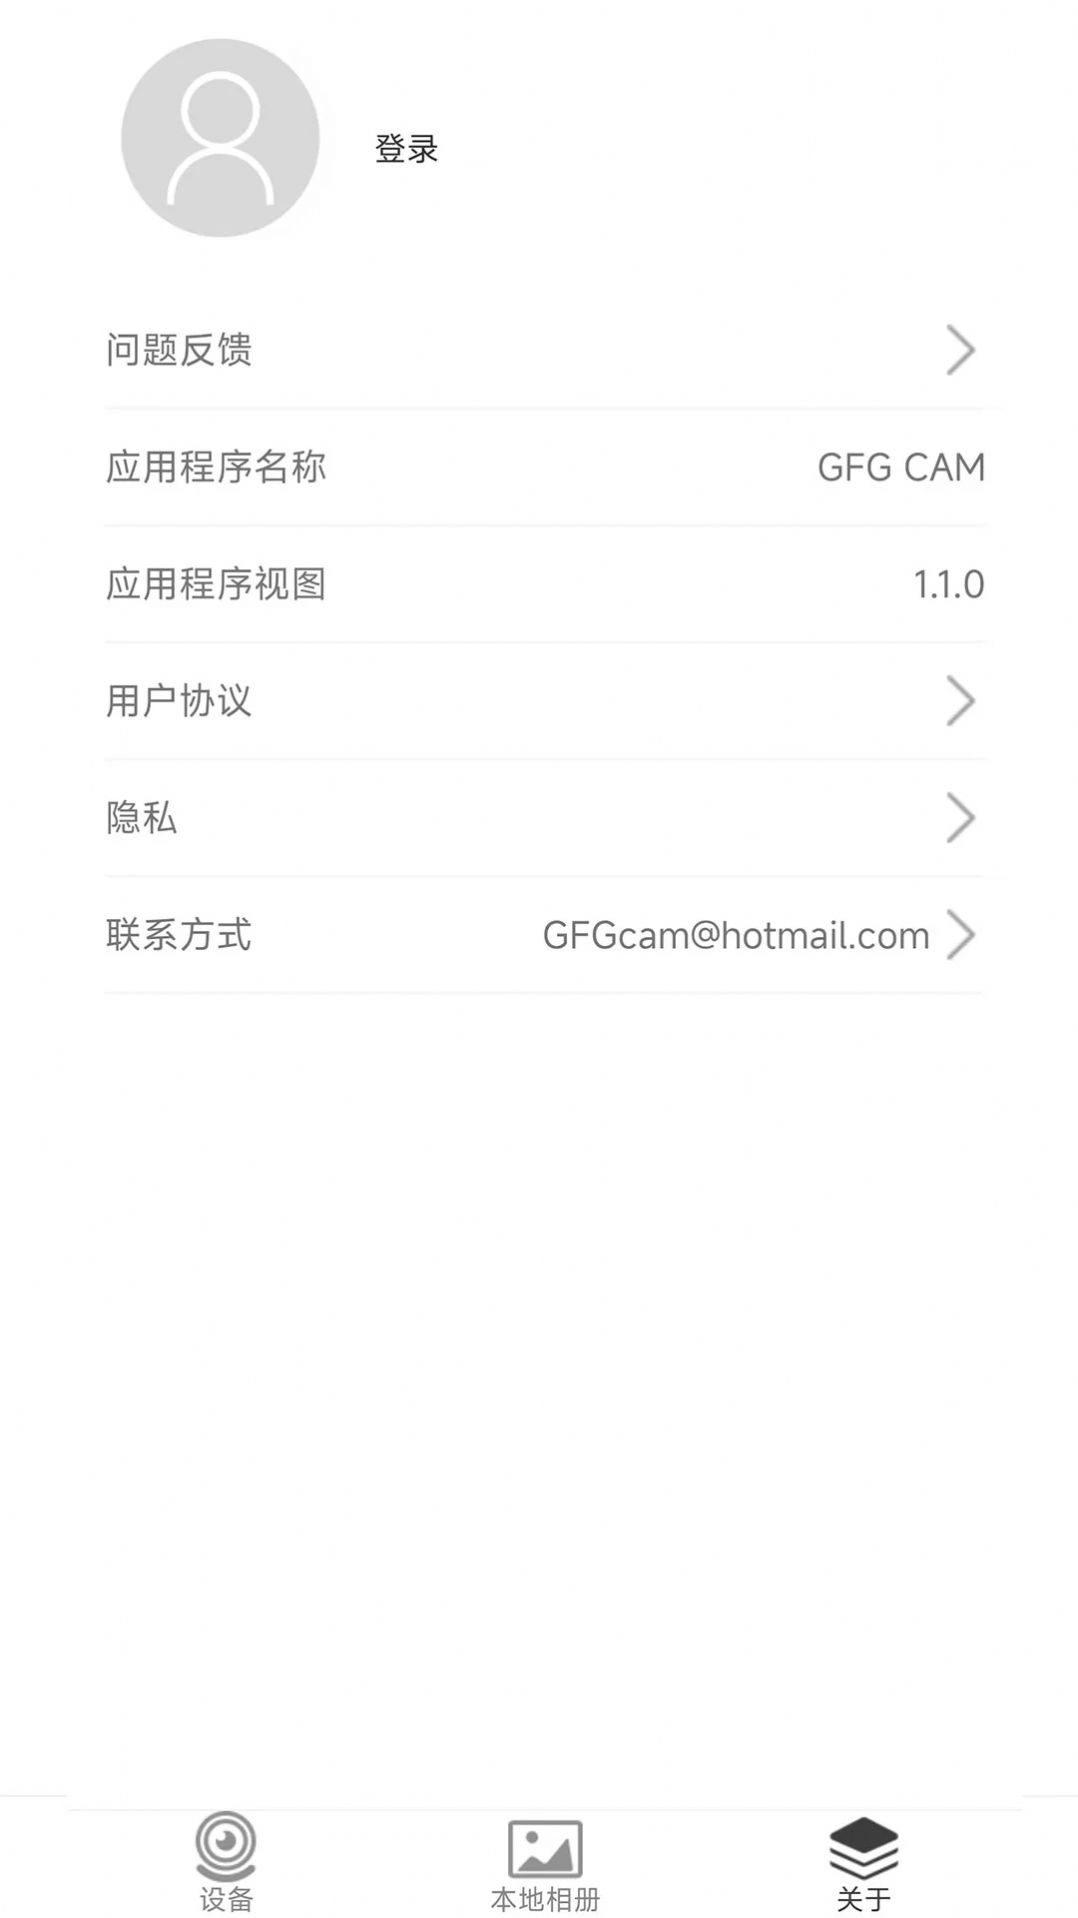 GFG CAM行车记录仪软件下载手机版图片1